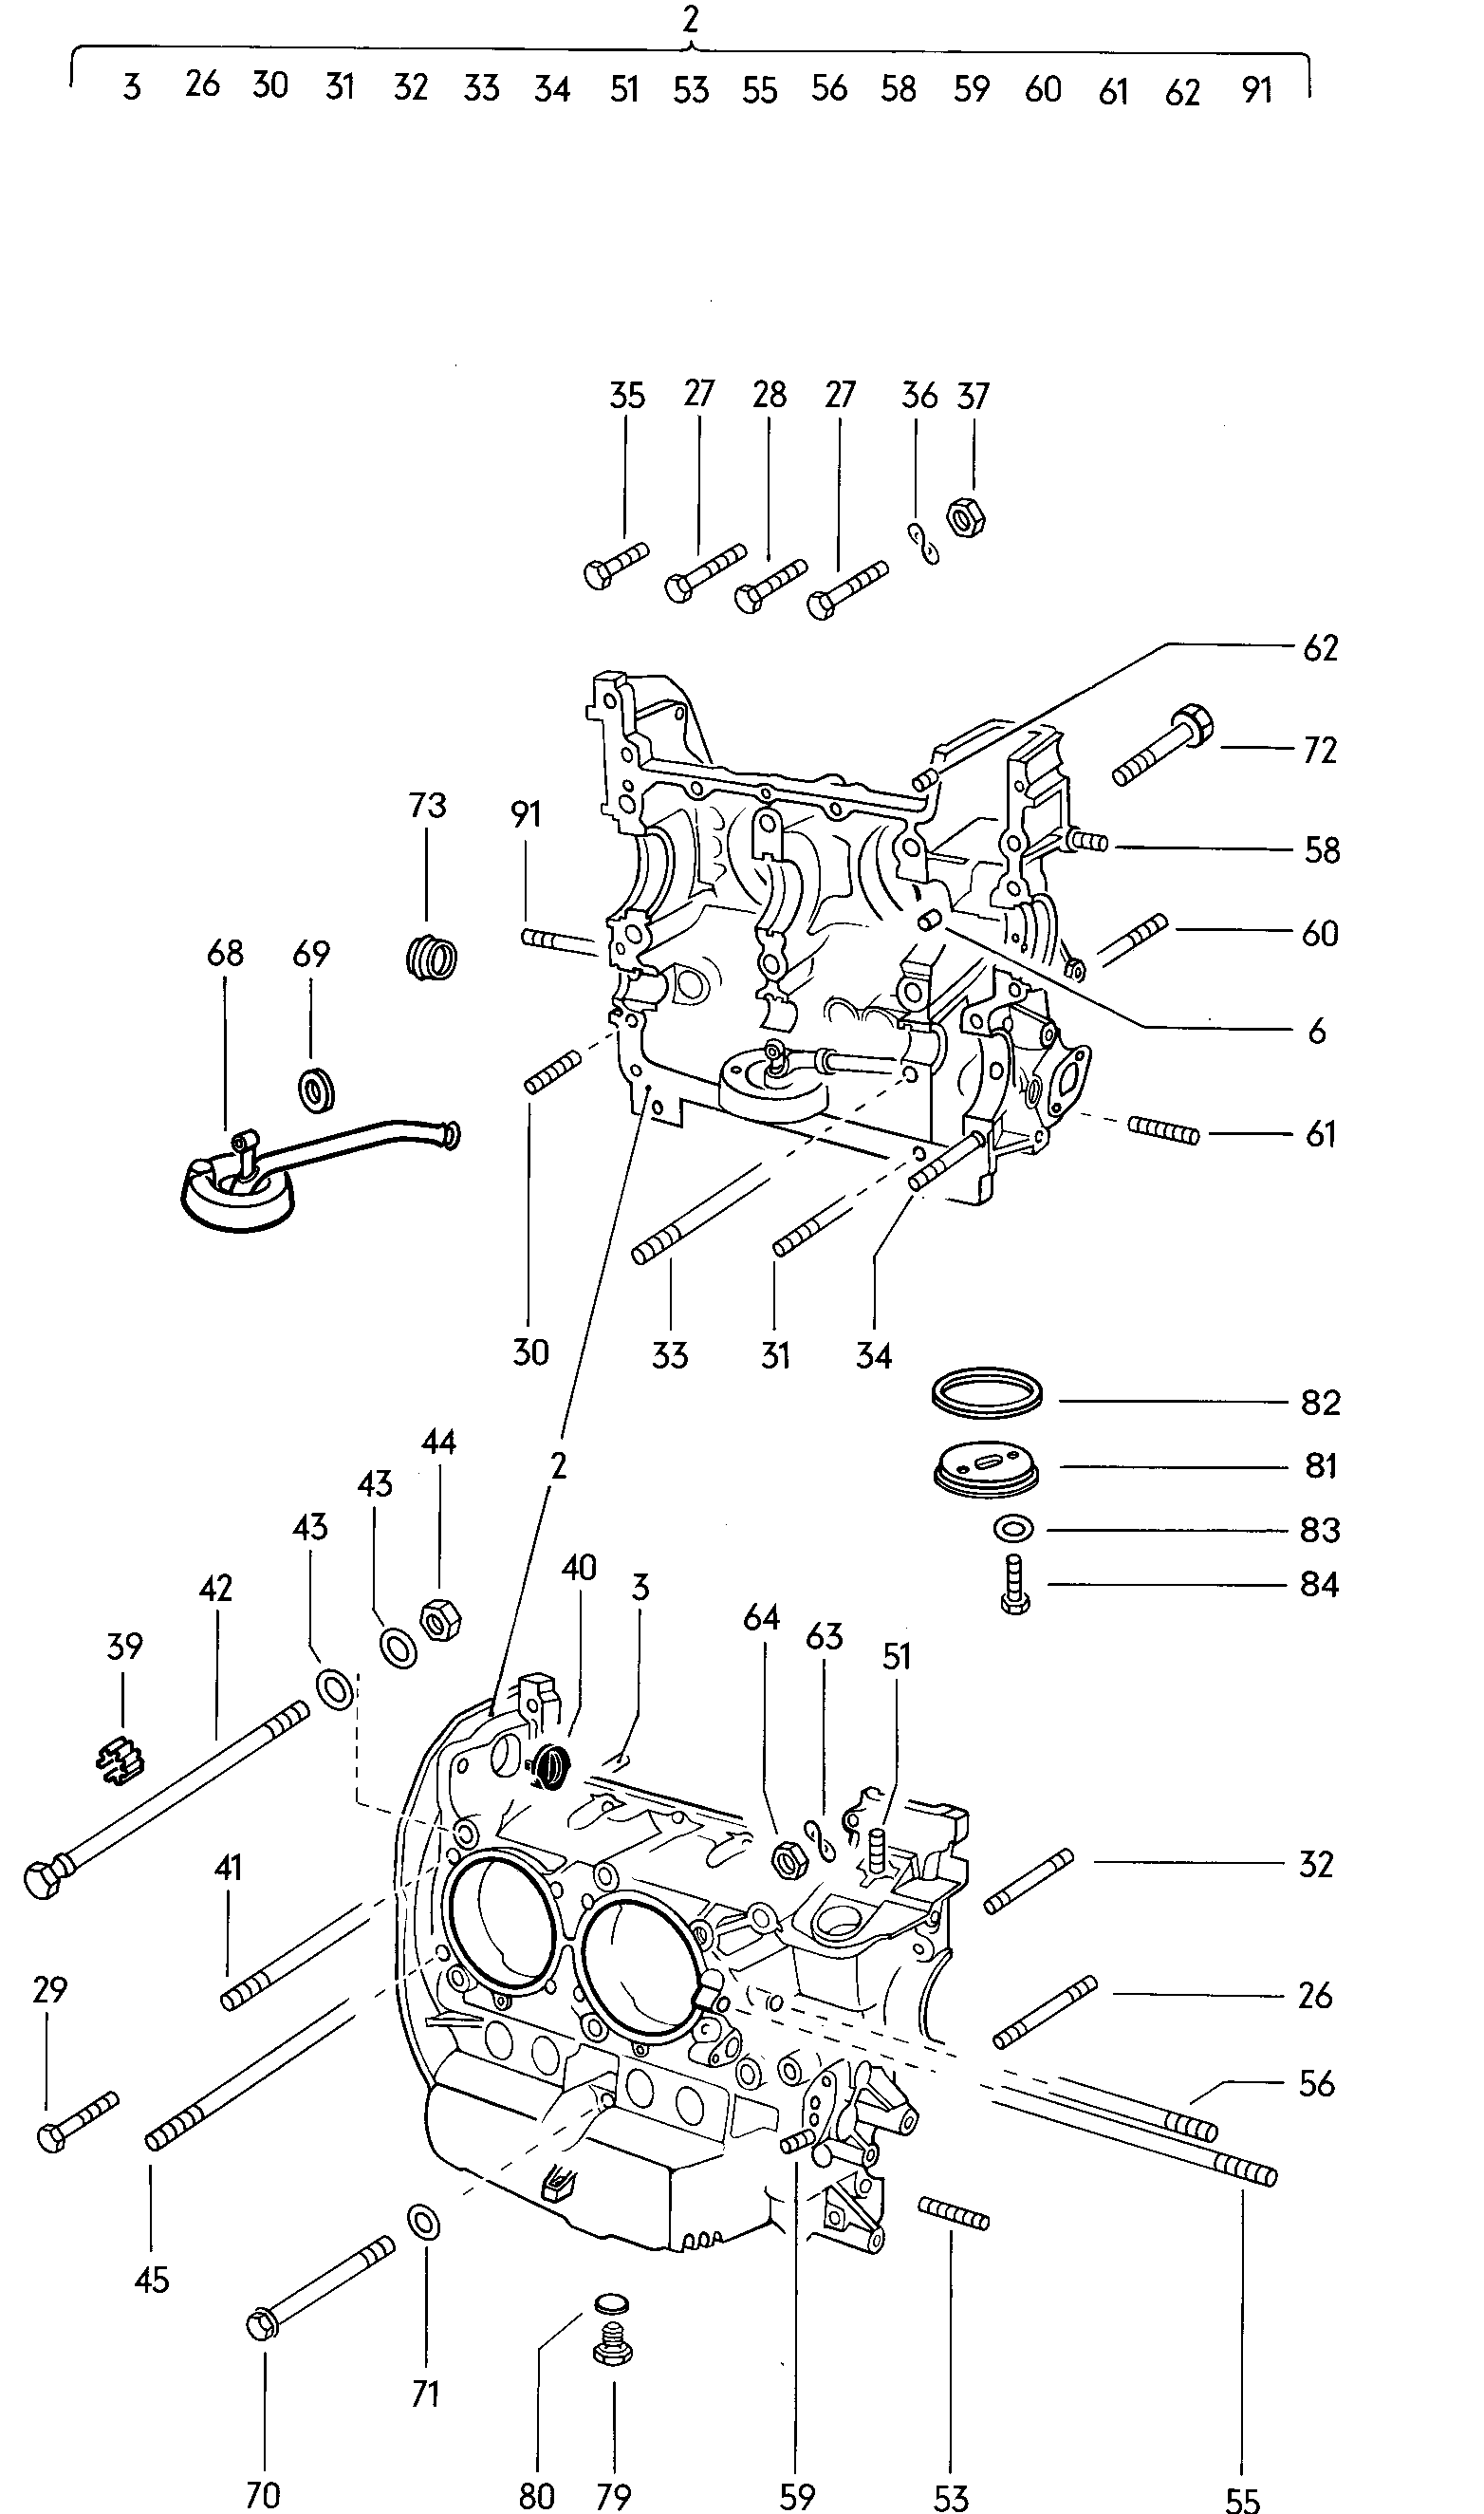 piezas fijacion p. motor y
cambio - Typ 2/syncro(T2)  